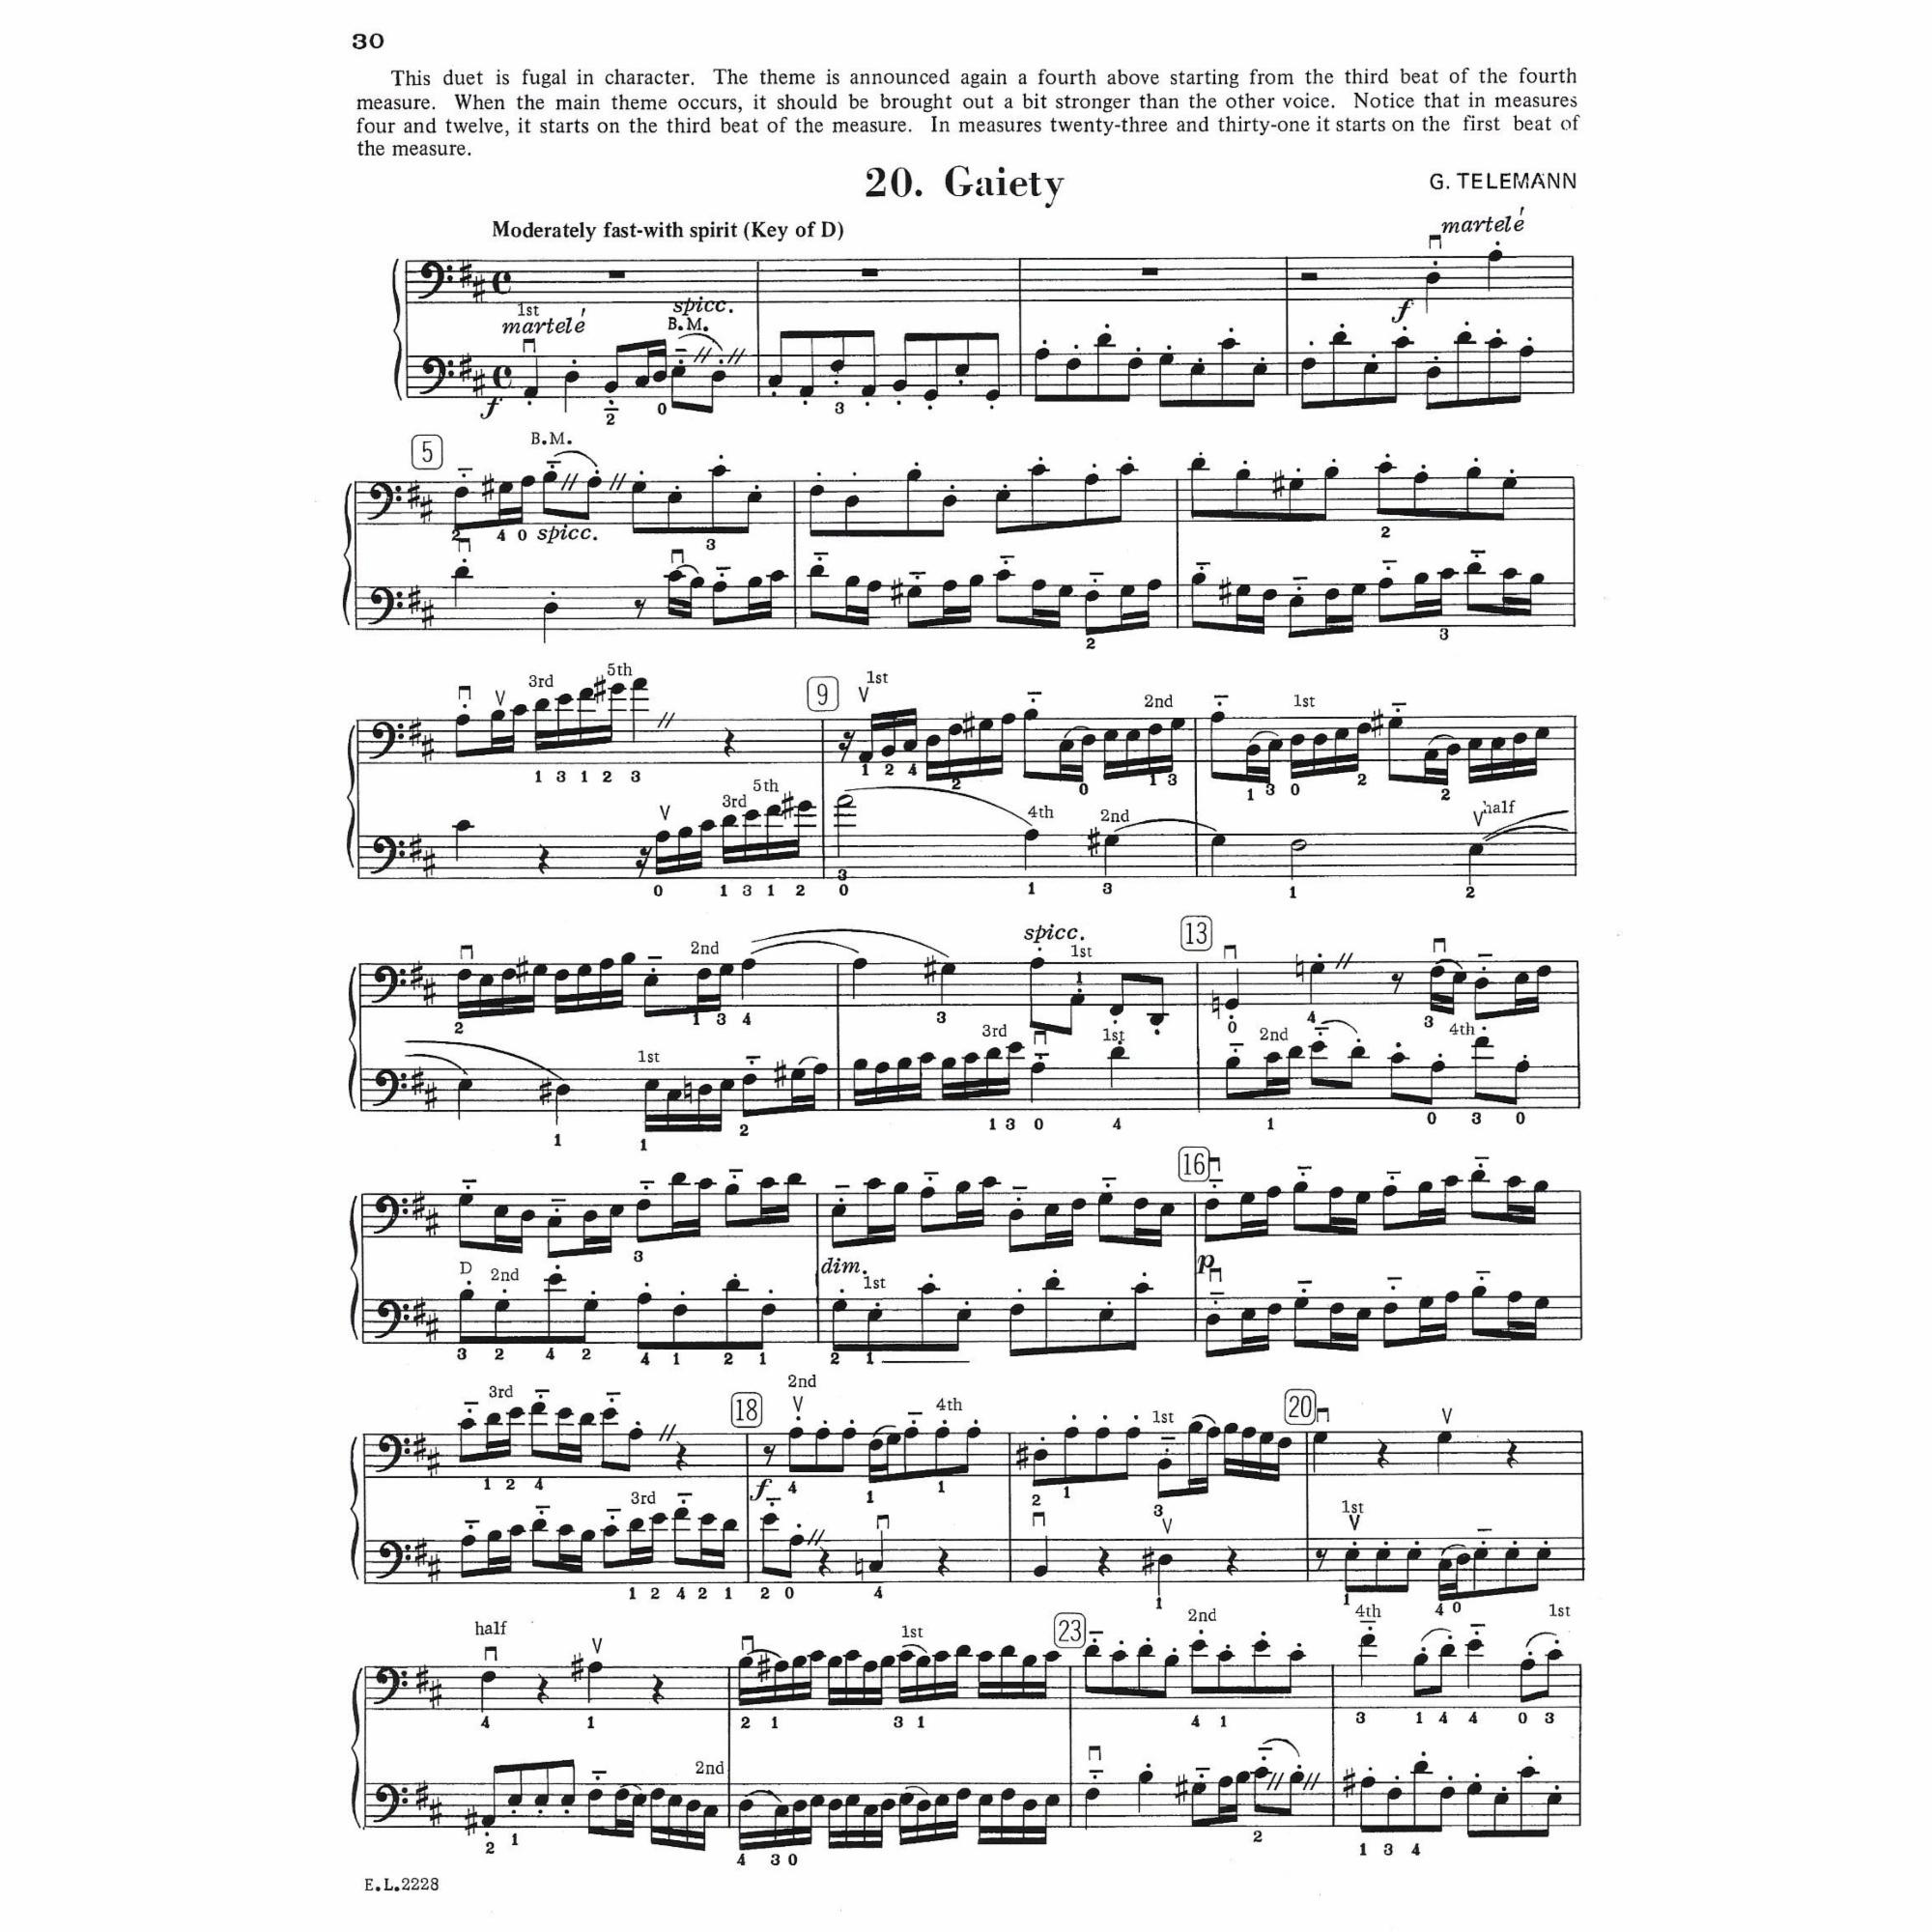 Sample: Cello (Pg. 30)